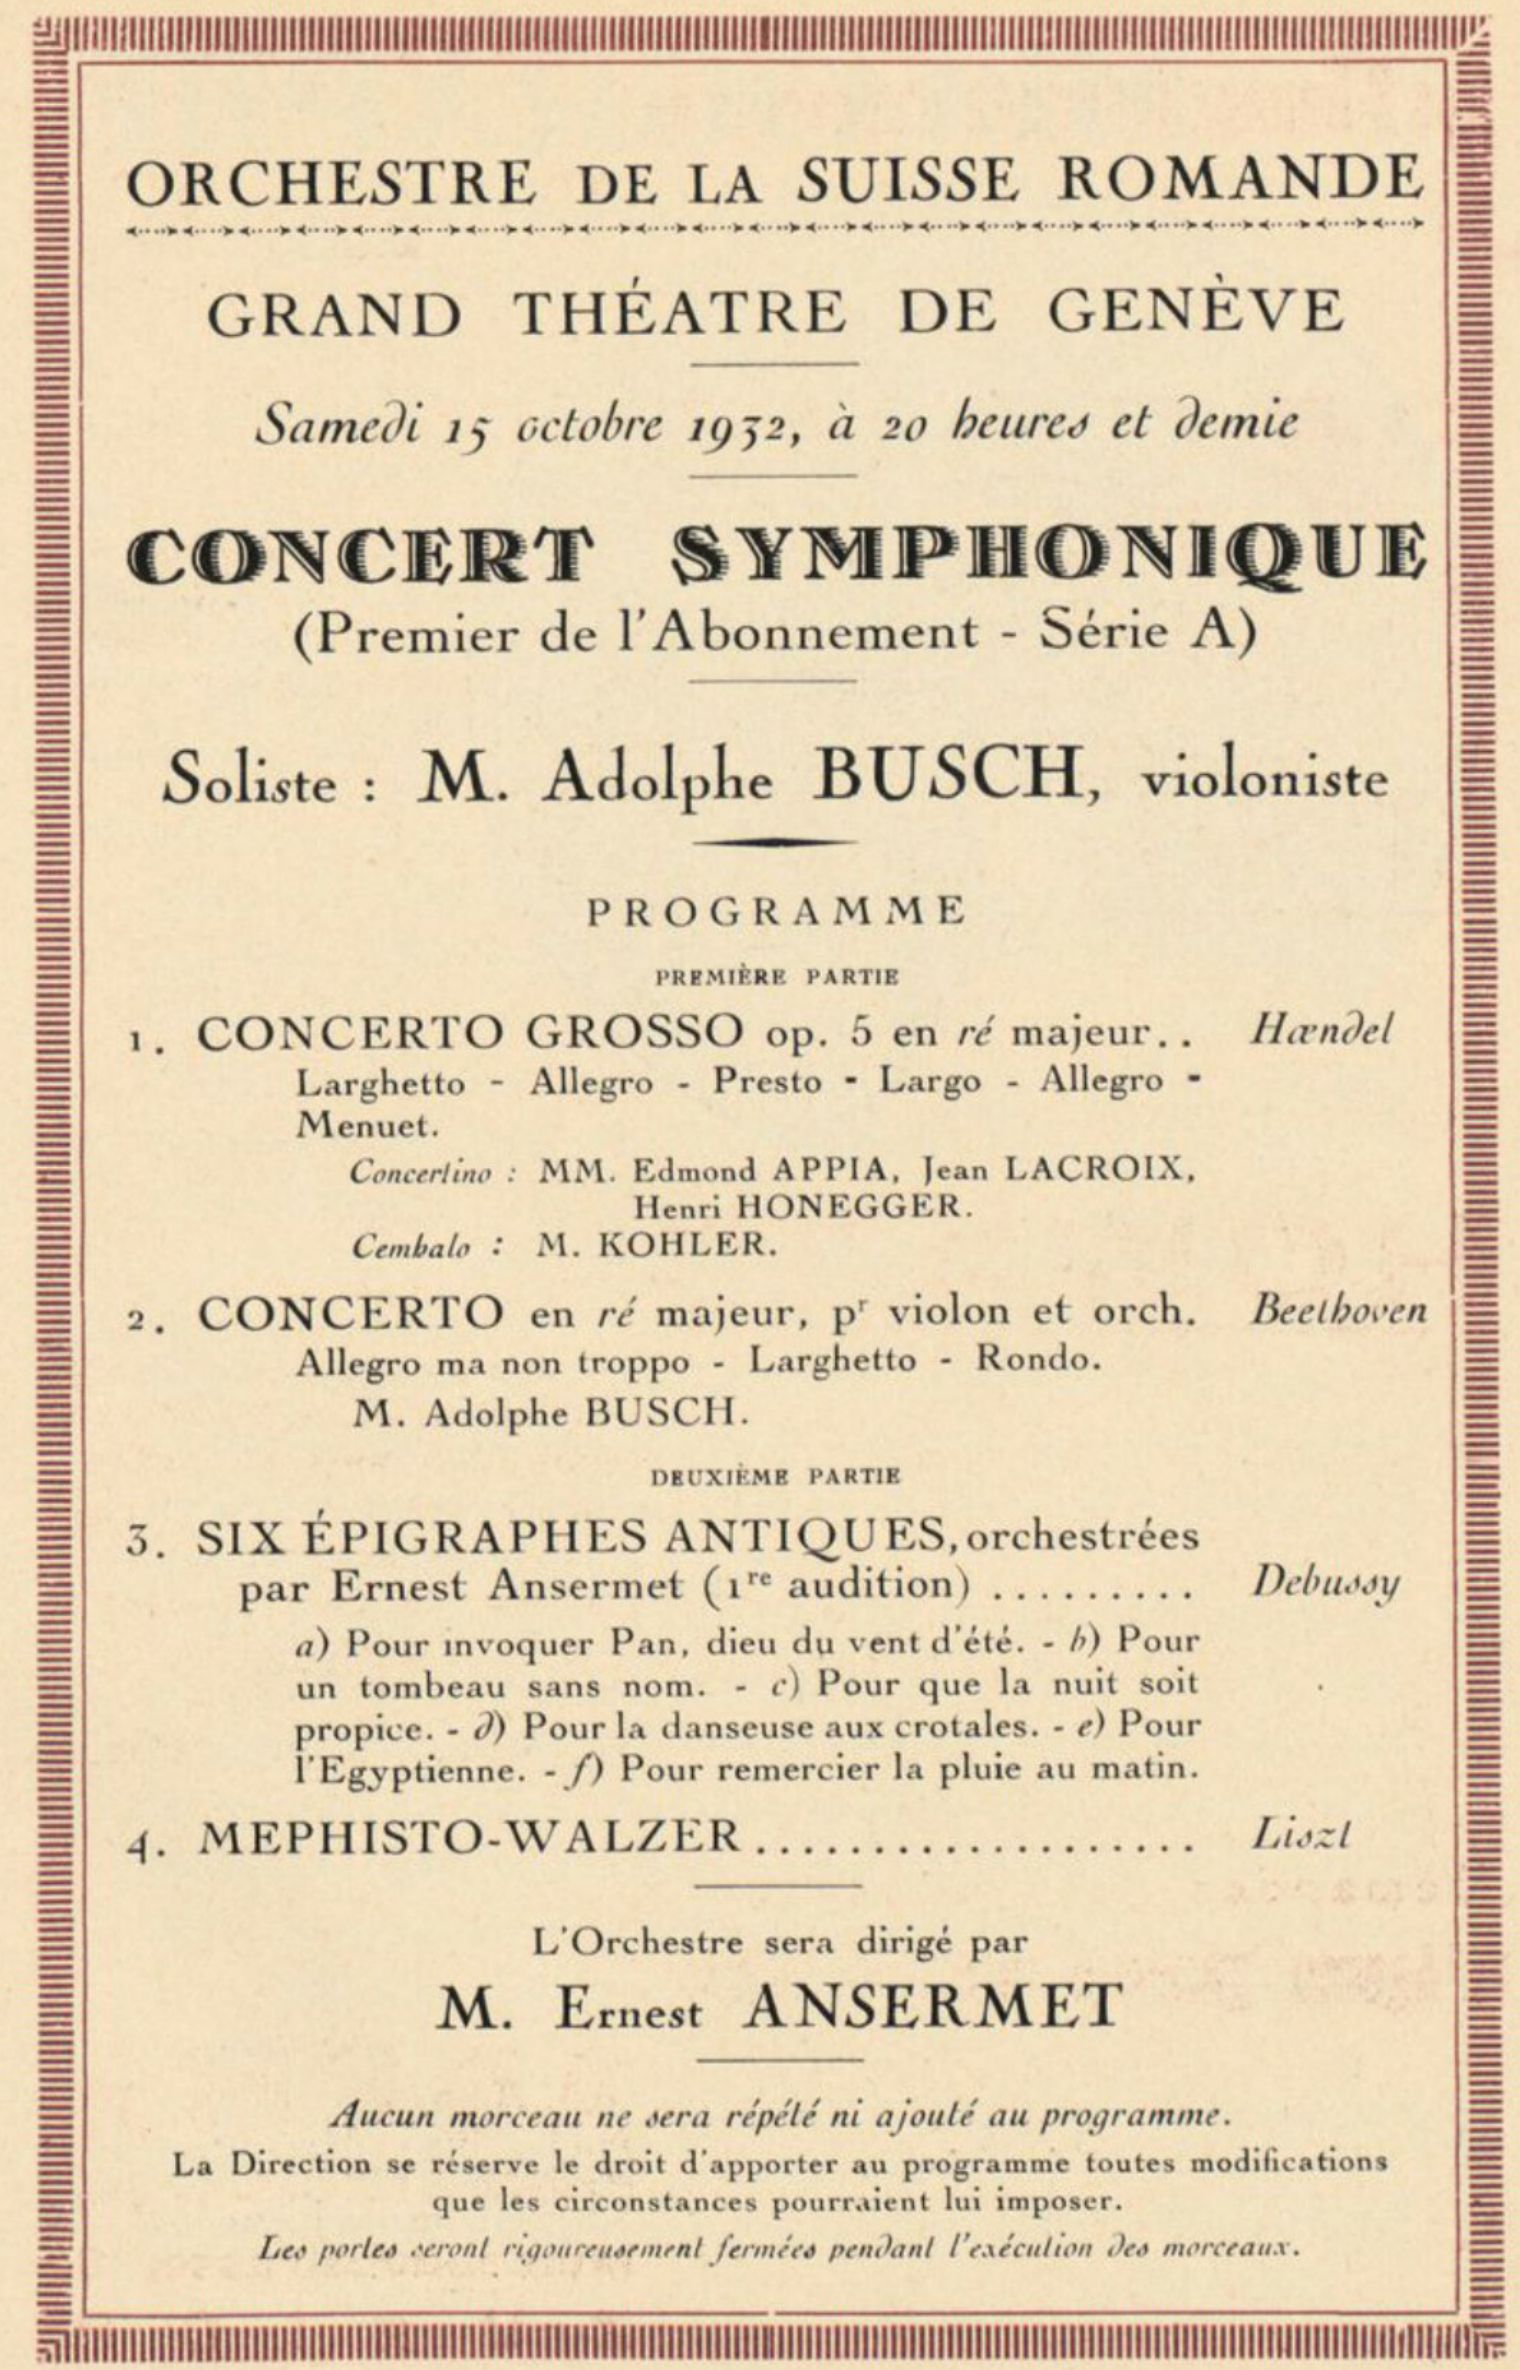 Extrait cité de la brochure-programme du concert du 15 octobre 1932, cliquer pour une vue agrandie